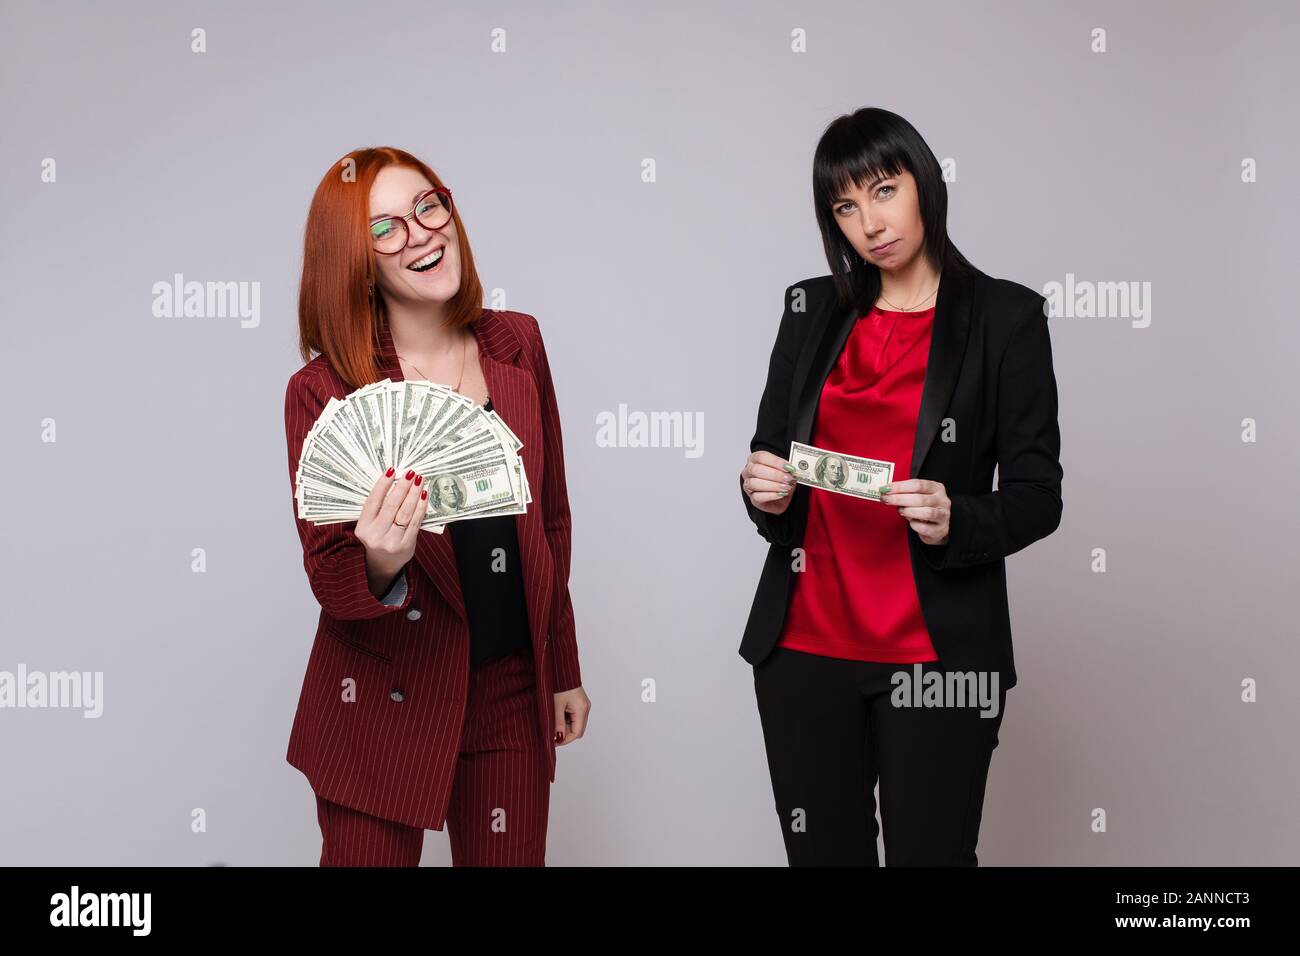 Stock photo portrait of two businesswomen avec de l'argent. Femme aux cheveux rouges en costume rouge tenant une grosse somme de dollars. Femme aux cheveux noirs en costume noir Banque D'Images